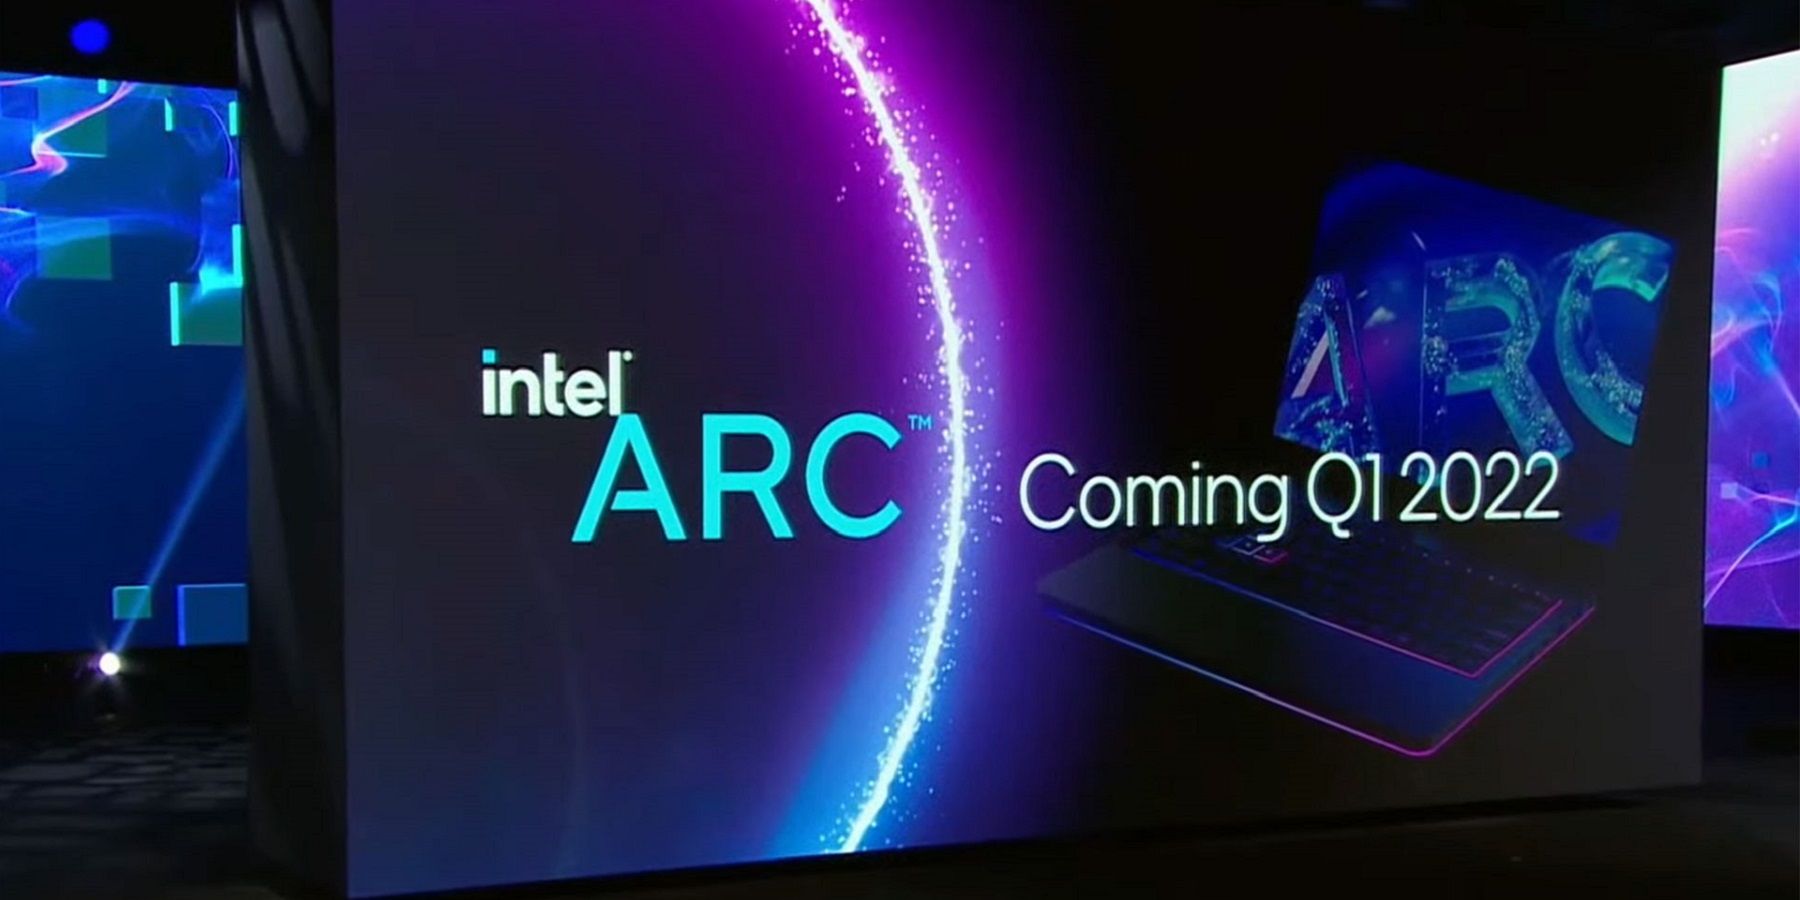 Рекламный щит с логотипом Intel Arc и словами 